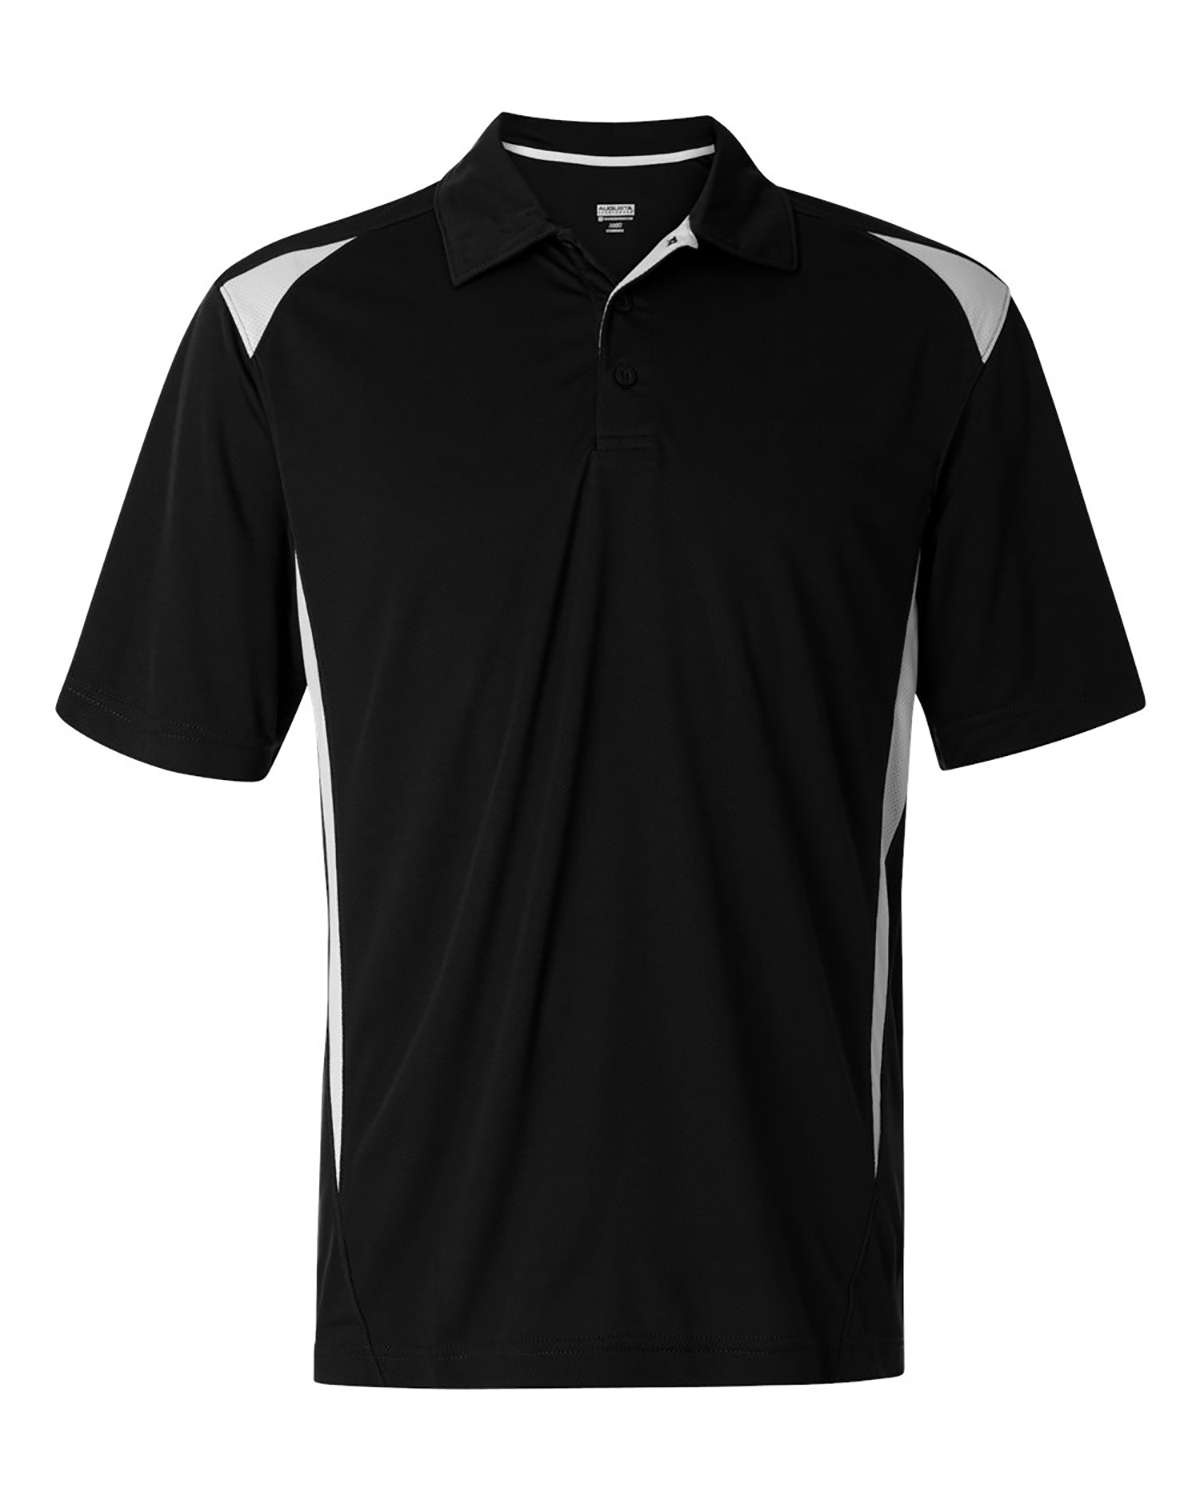 'Augusta Sportswear 5012 Premier Polo'